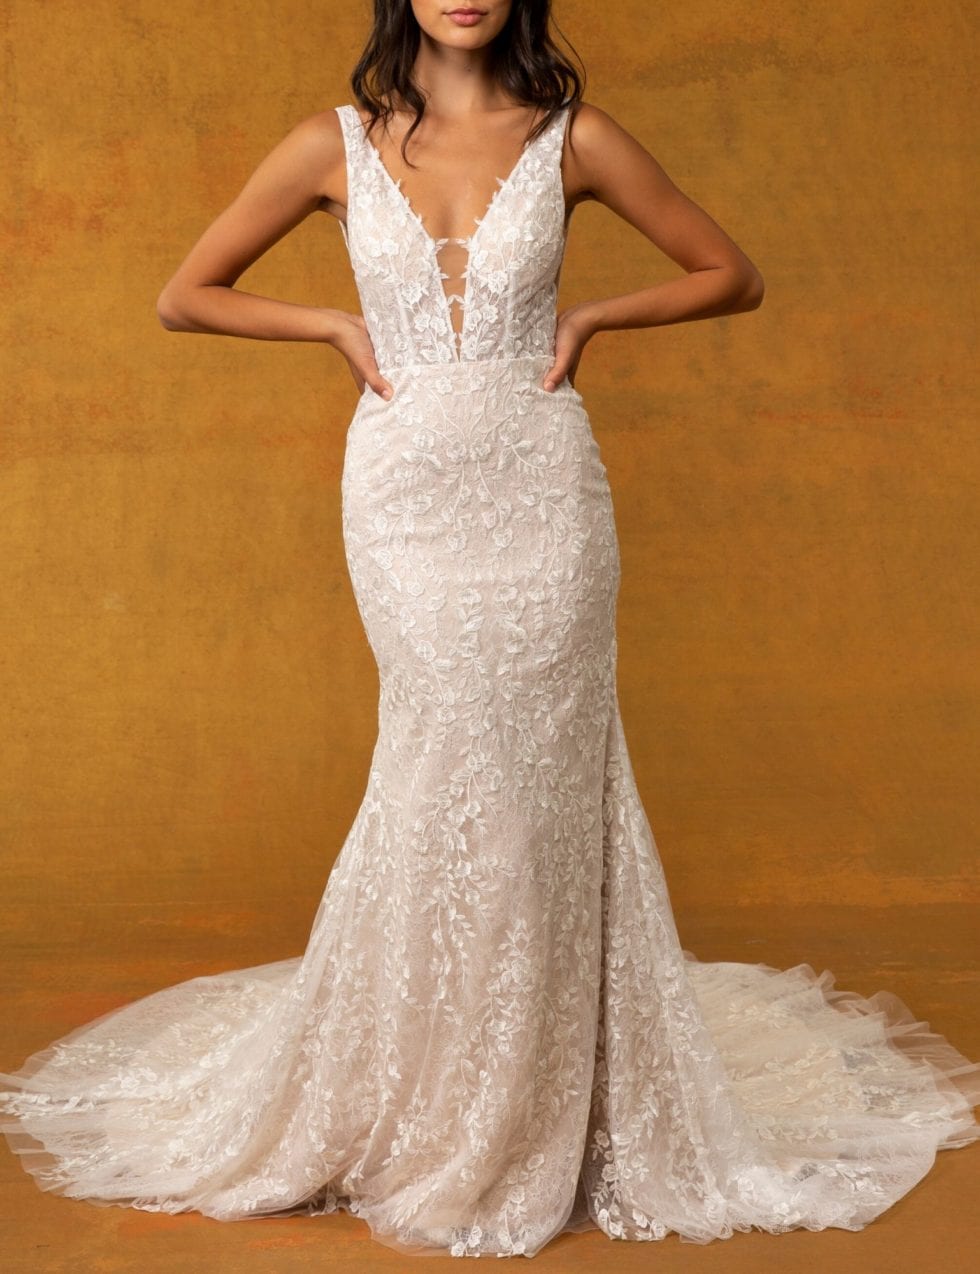 GC#36517 - Tara Lauren Freya Wedding Dress in Size 10